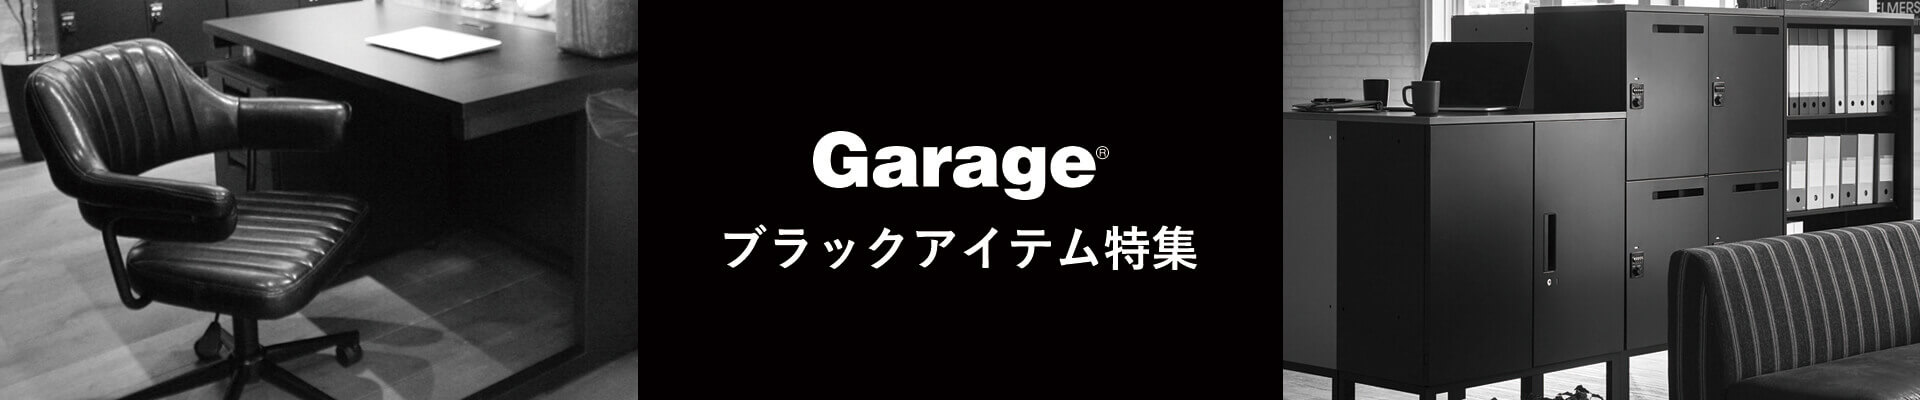 Garage ブラックフライデー ブラックアイテム特集